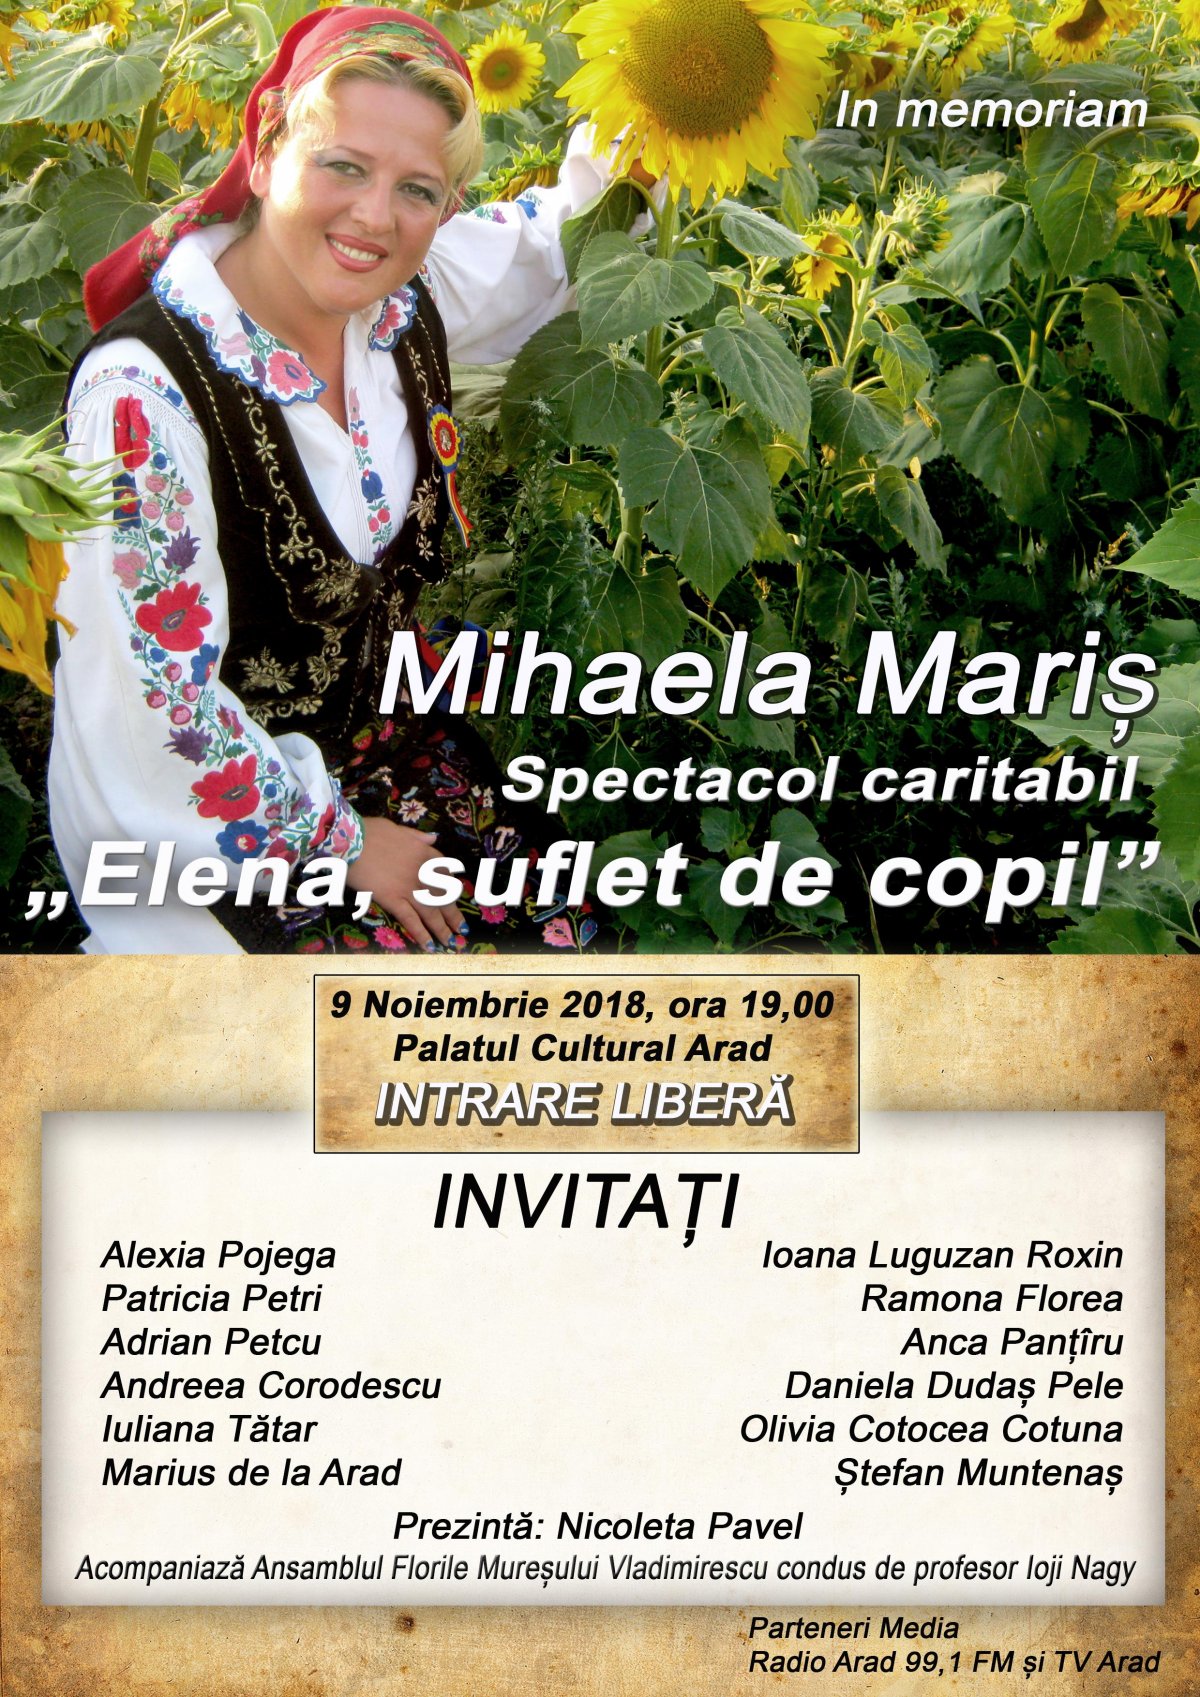 In memoriam, Mihaela Mariș. Concert caritabil, suflet și aduceri aminte!